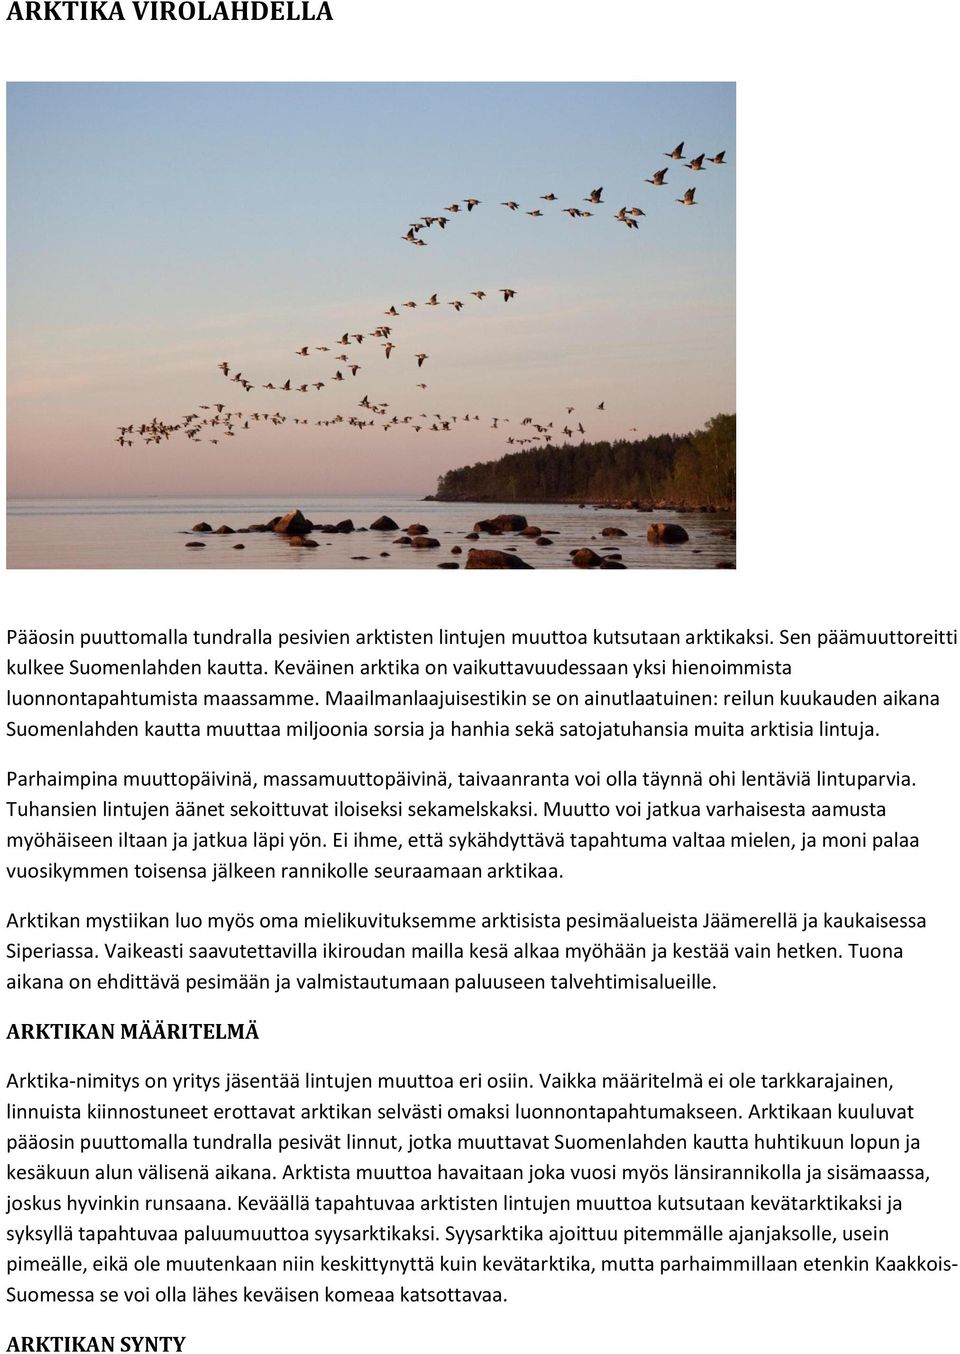 Maailmanlaajuisestikin se on ainutlaatuinen: reilun kuukauden aikana Suomenlahden kautta muuttaa miljoonia sorsia ja hanhia sekä satojatuhansia muita arktisia lintuja.